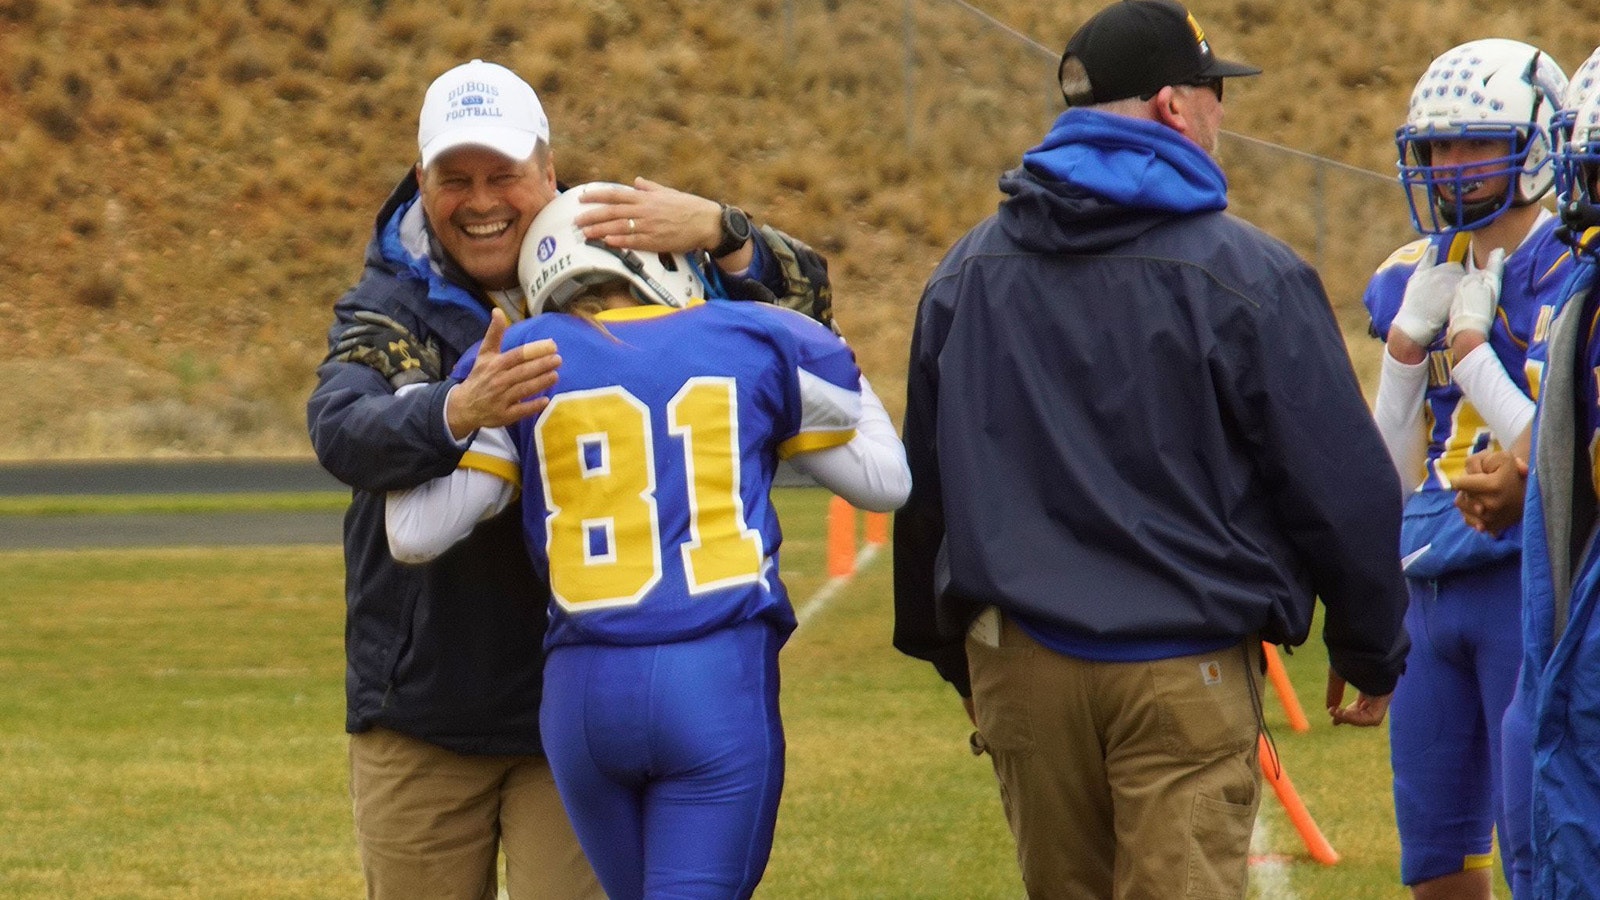 Coach Trembly shares a hug with Grove.